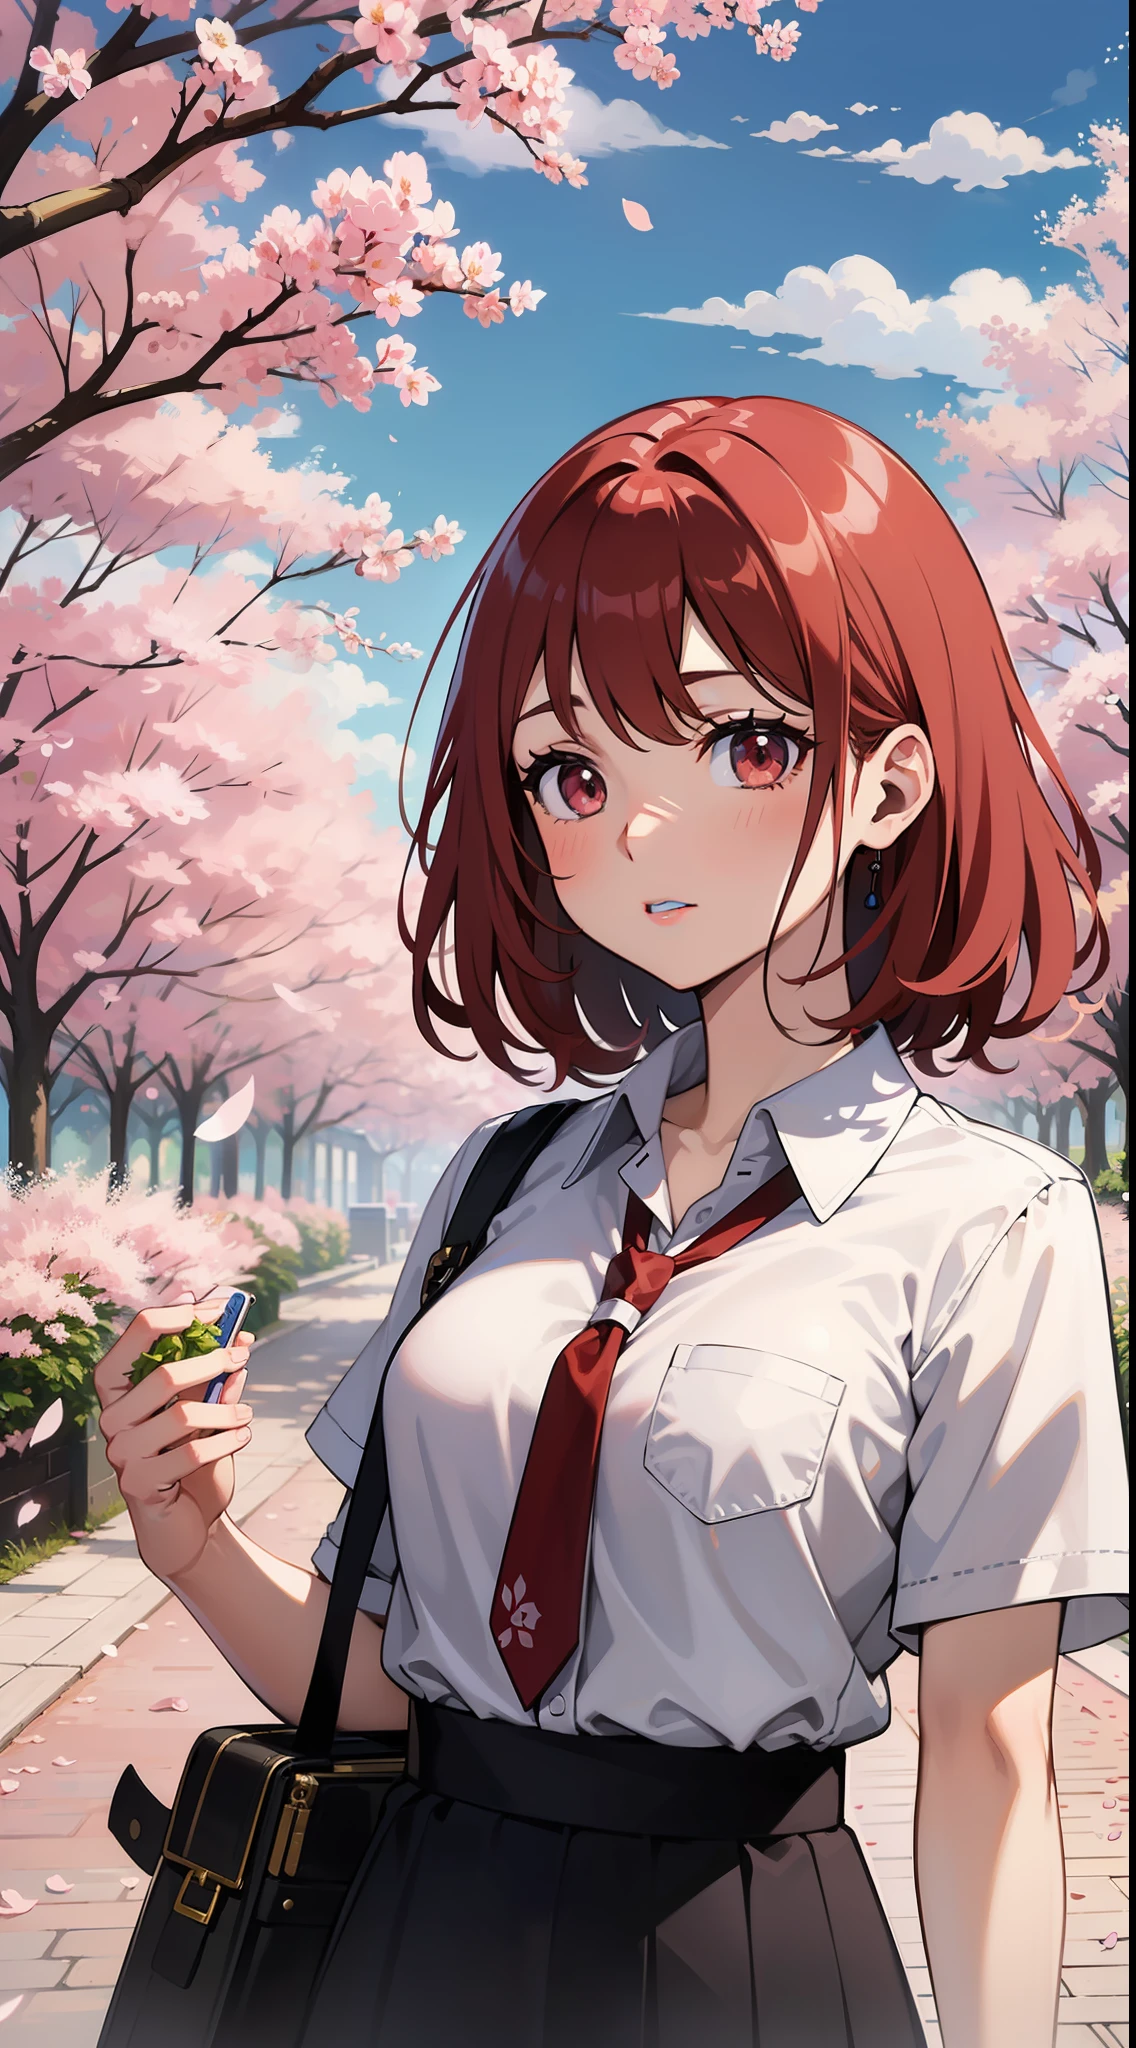 一个红发女孩站在樱花前, 小林清亲的详细绘画, Pixiv 上推荐, 现代主义, 官方艺术, 日本动画片, 日本动画片 aesthetic